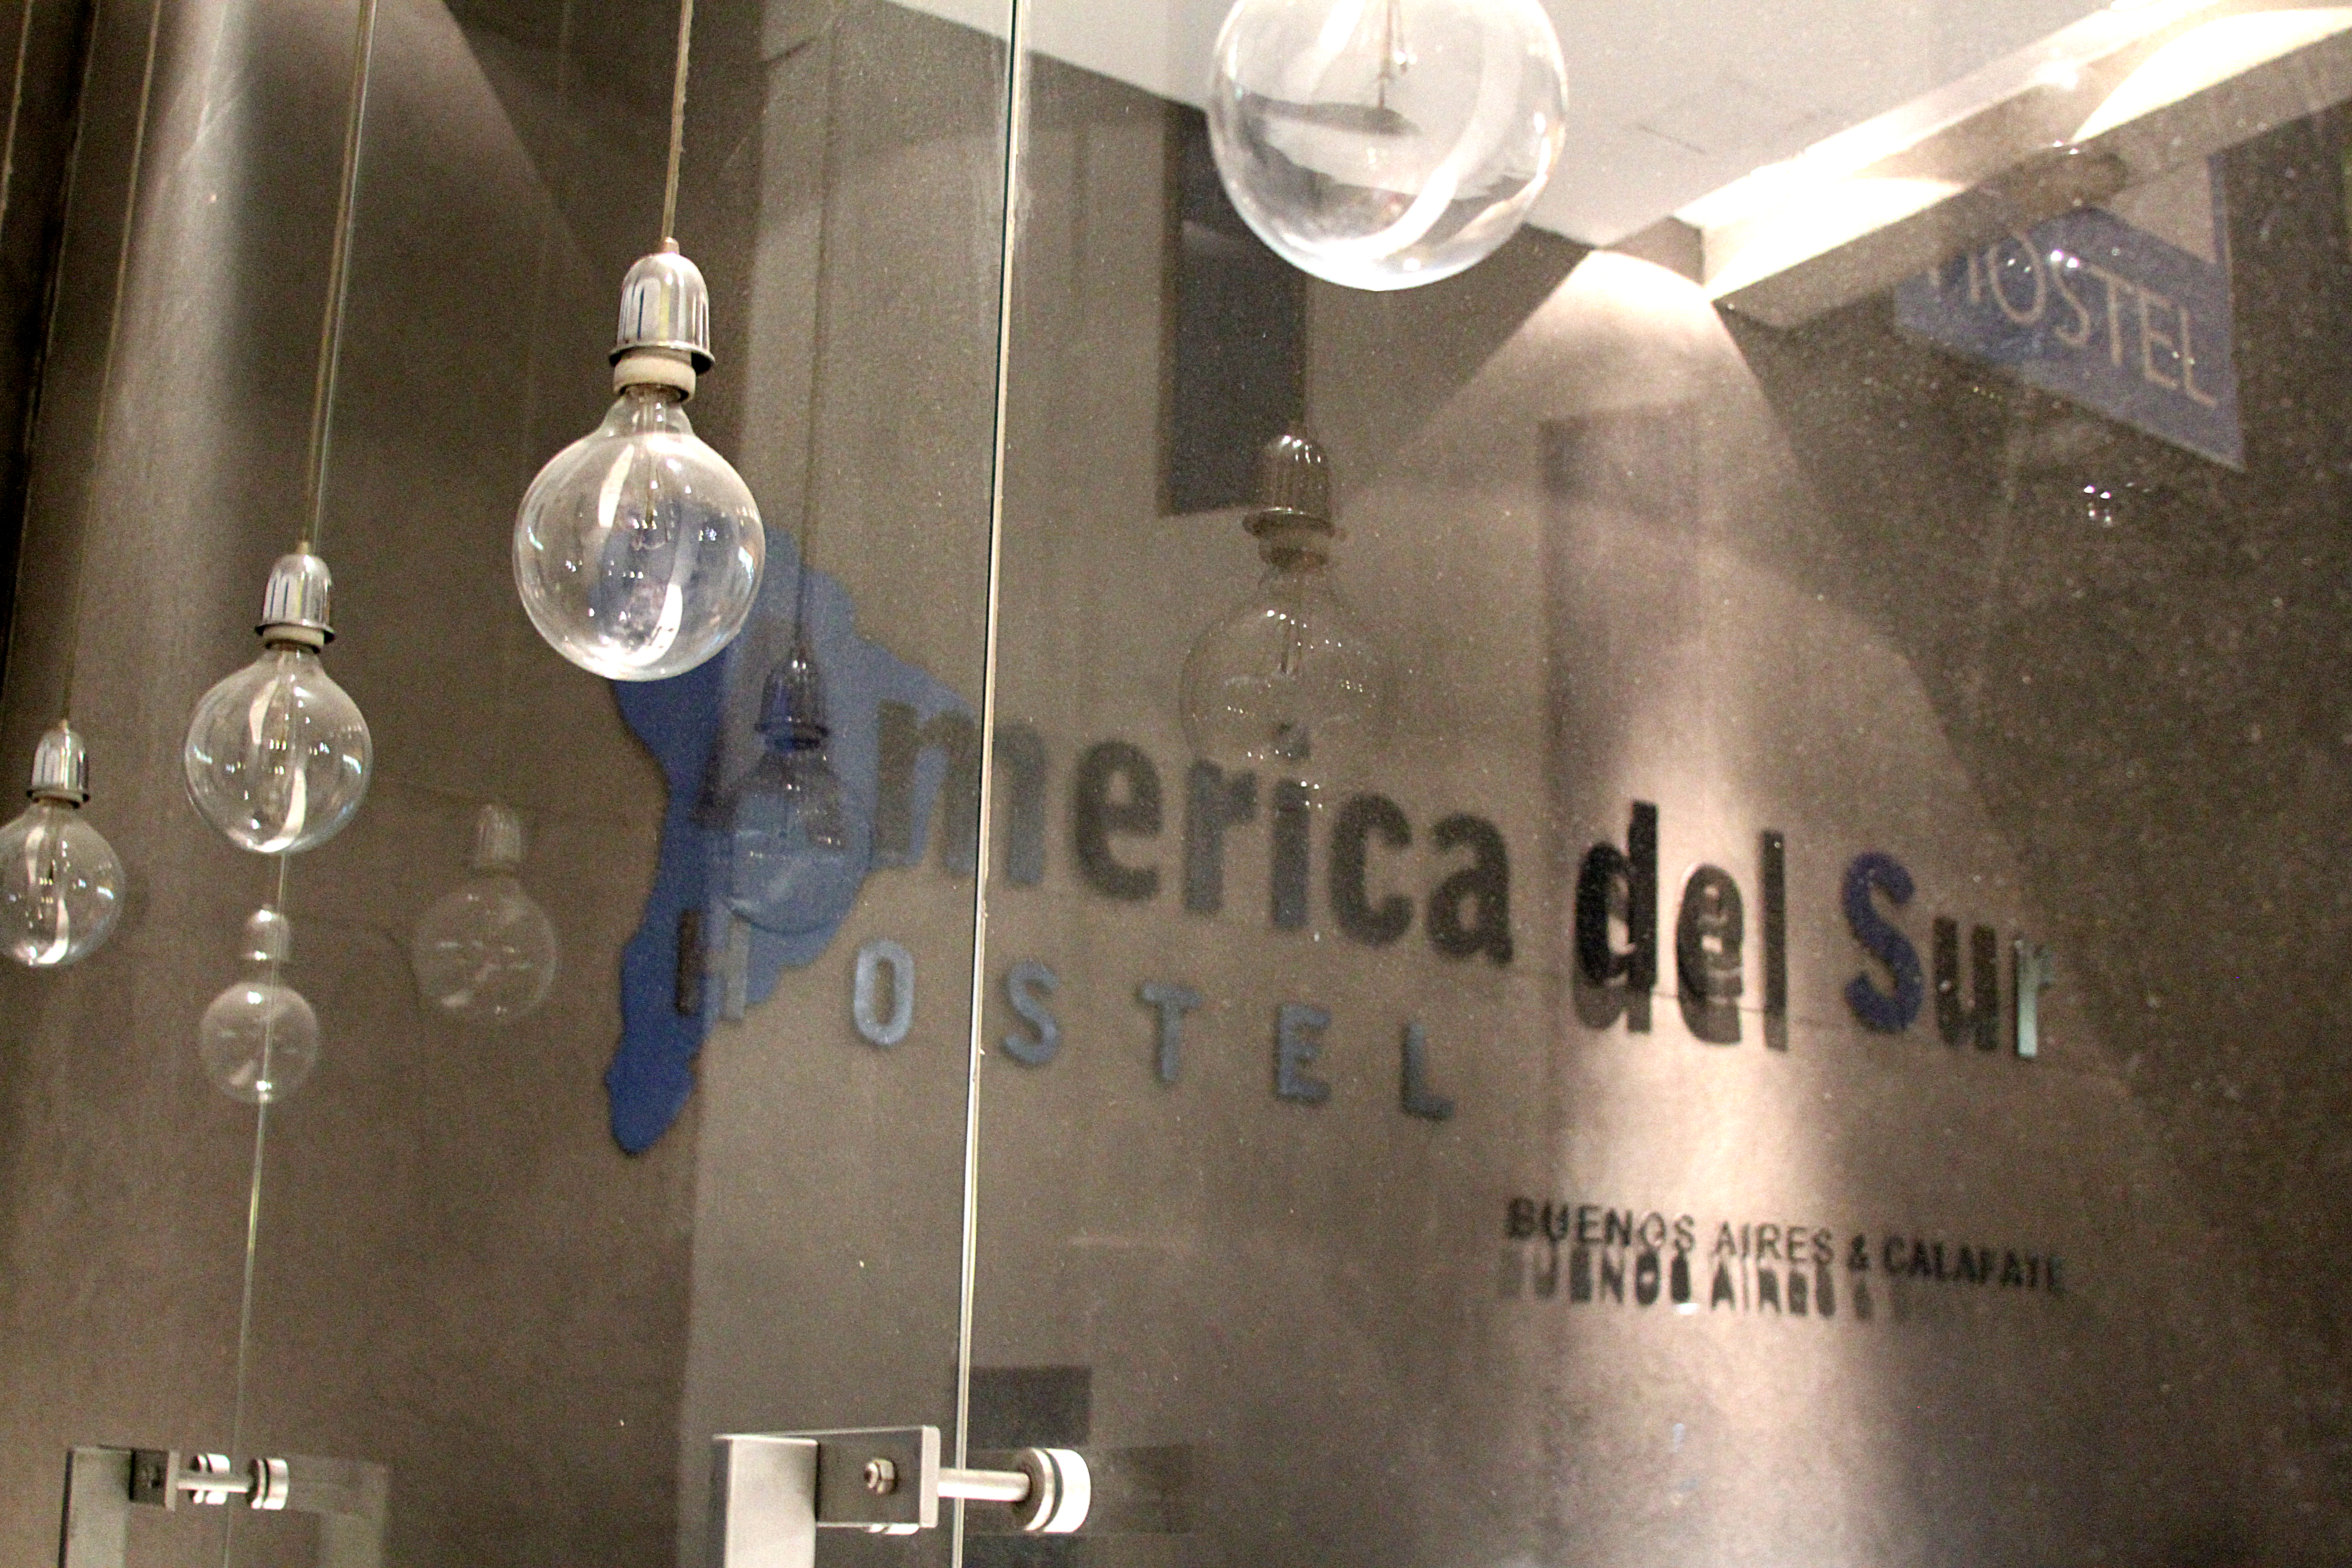 America del Sur Hostel Buenos Aires